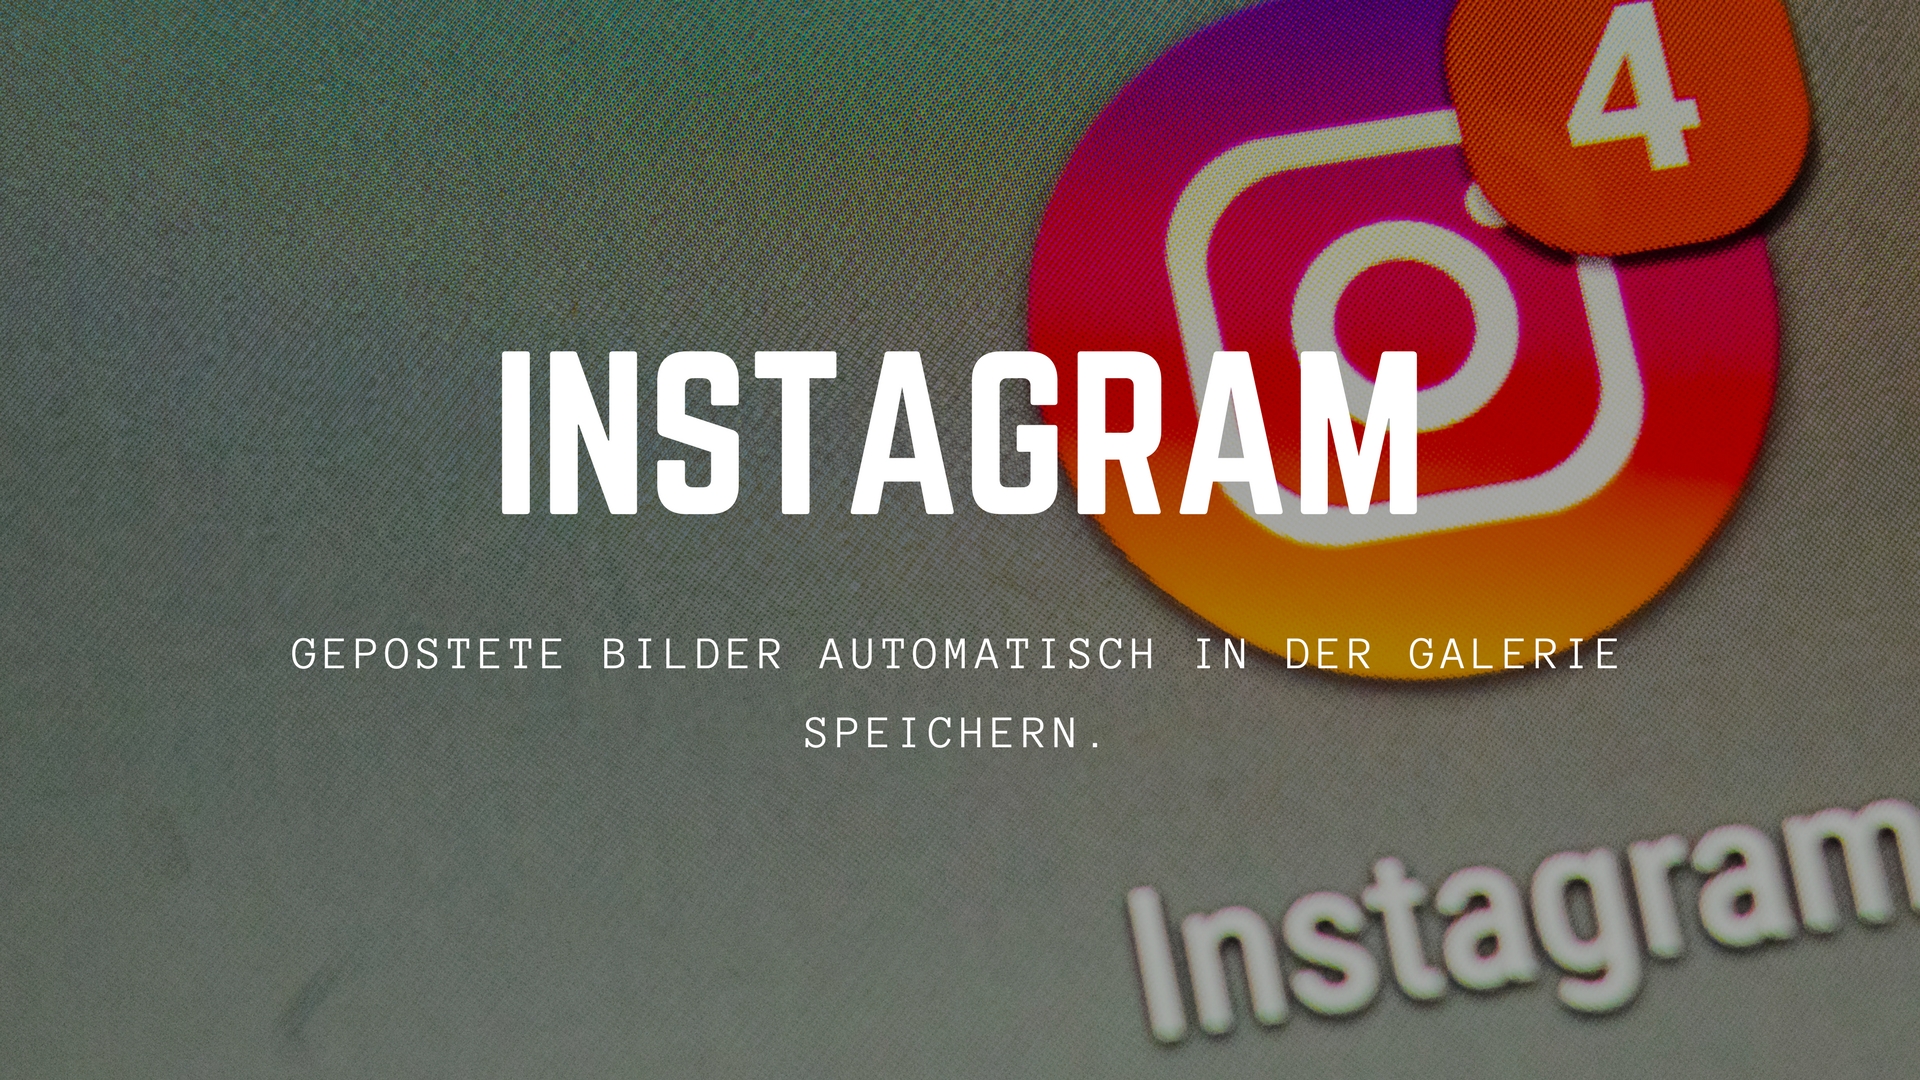 instagram-gepostete-bilder-speichern